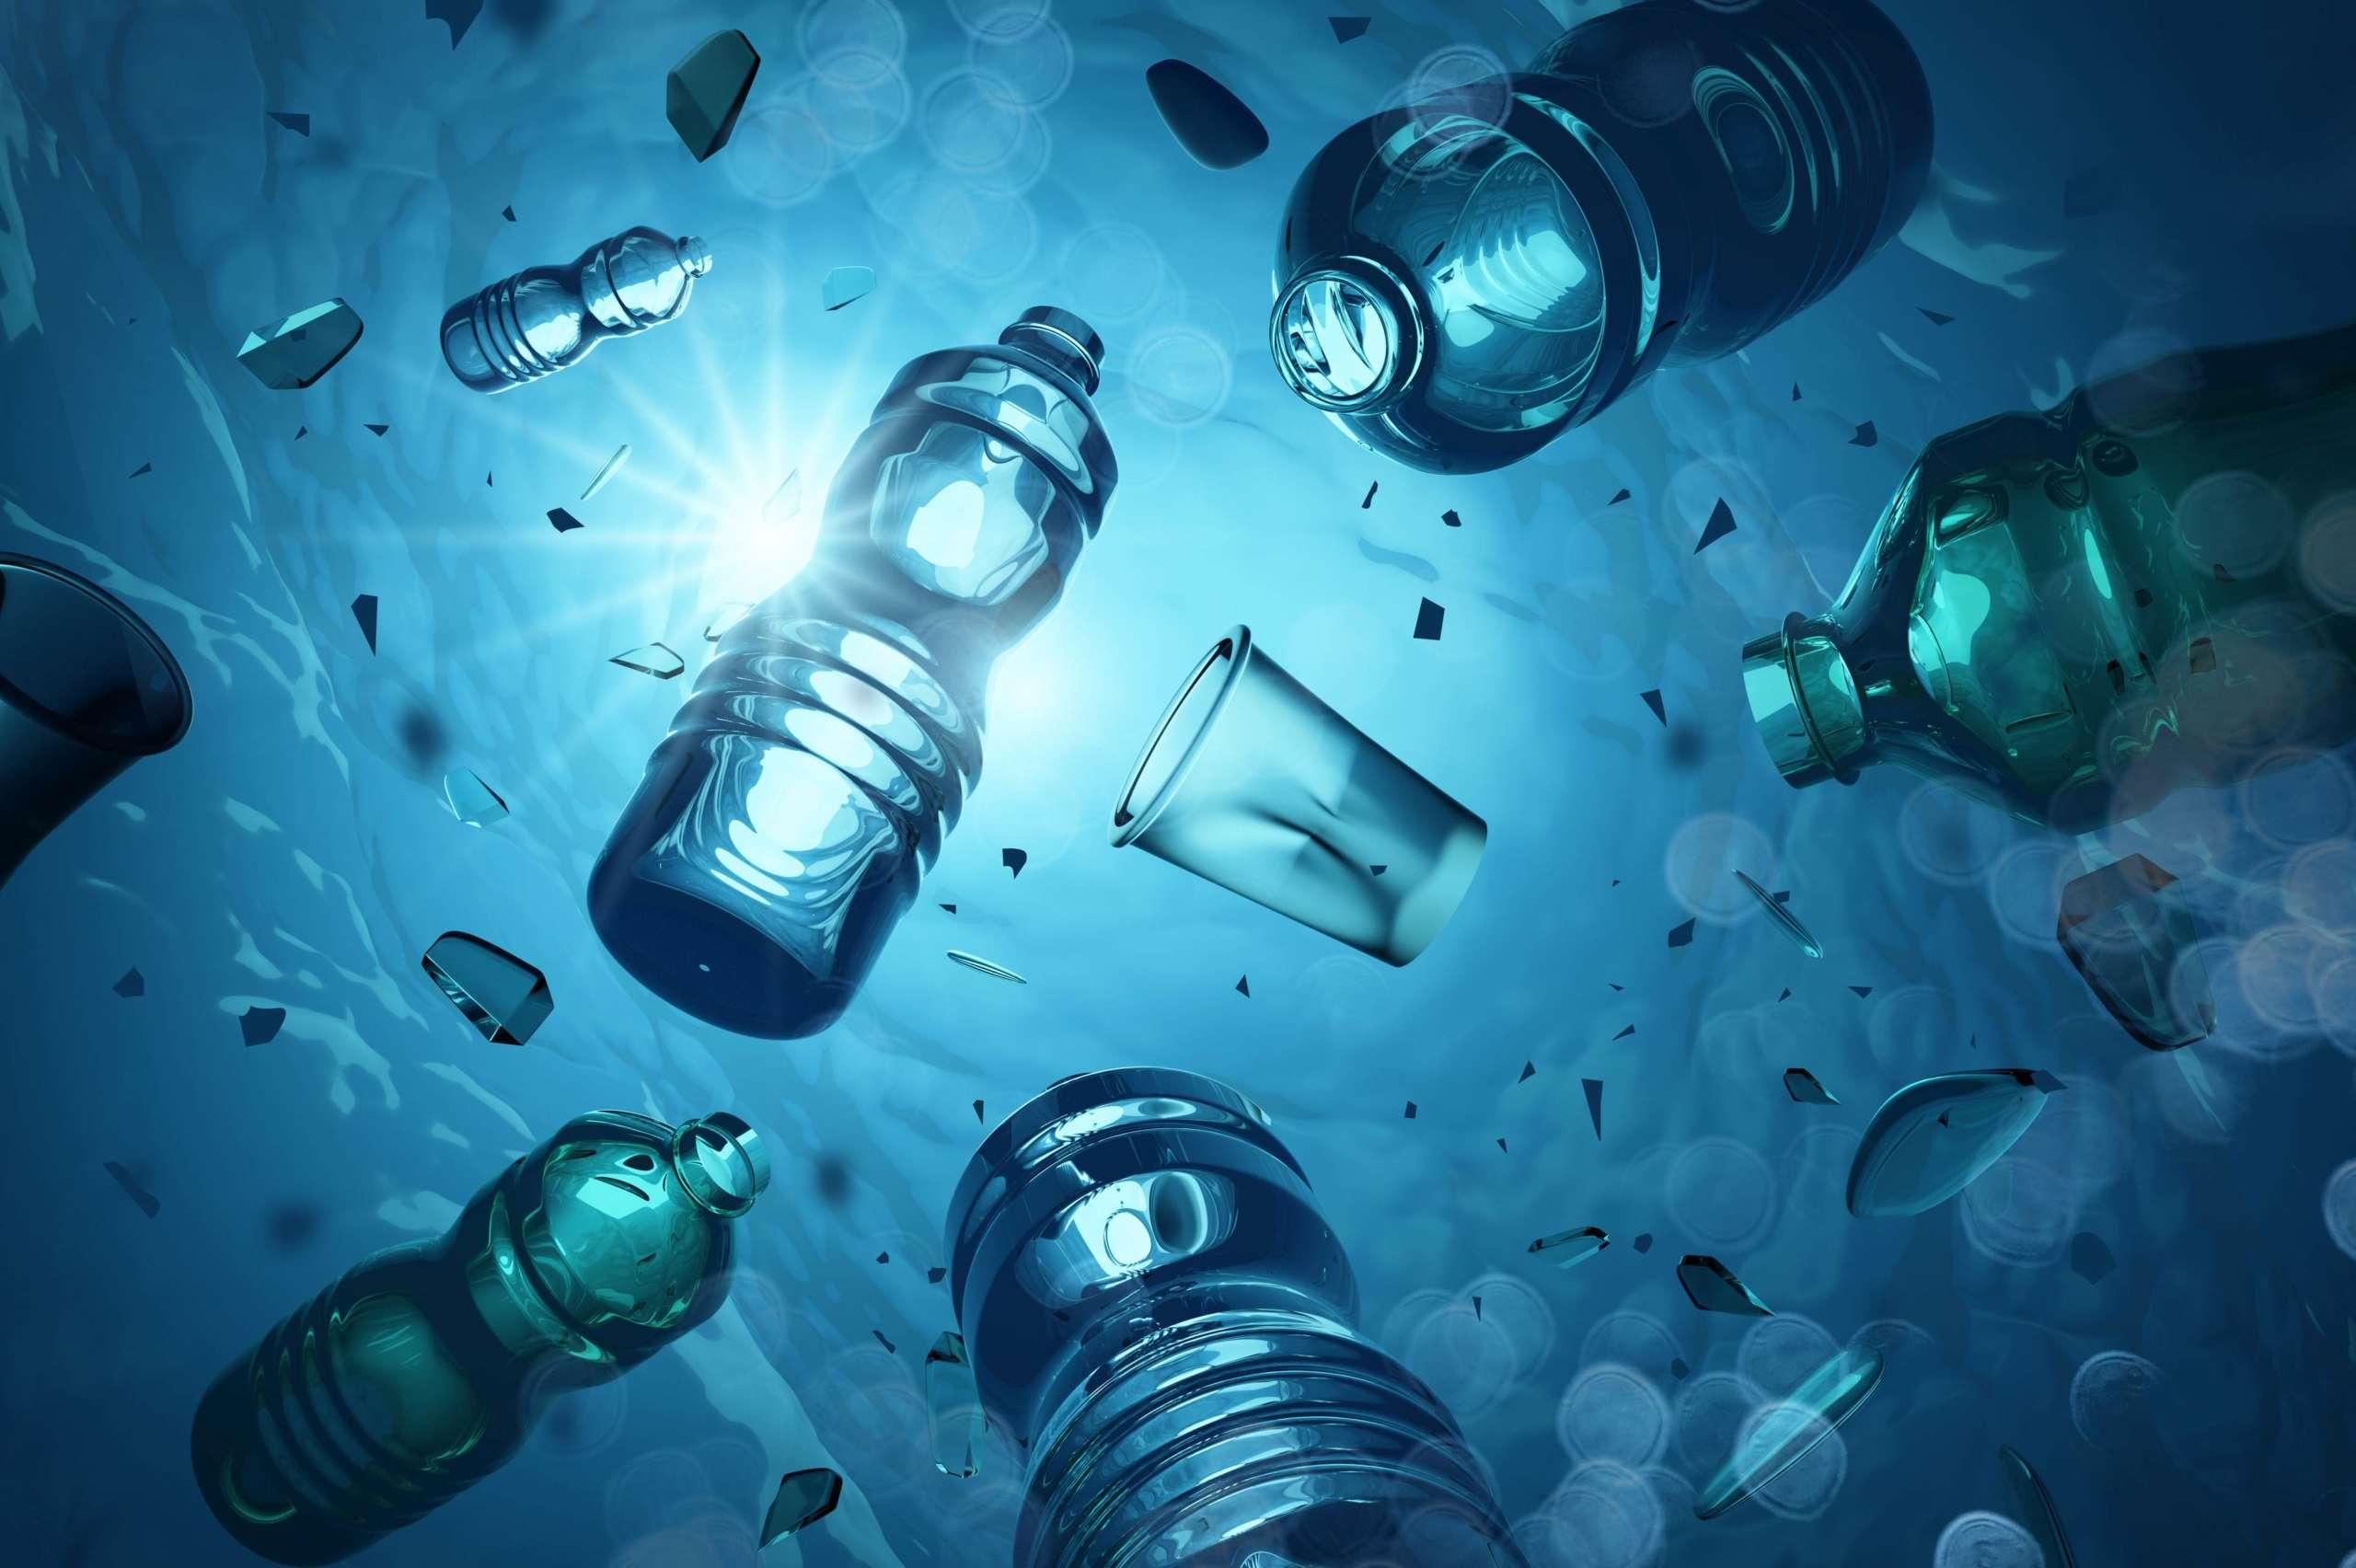 Problematische Plastikflaschen und Mikroplastik, die im offenen Meer schwimmen. Konzept der Meeresverschmutzung durch Plastik. 3D-Darstellung